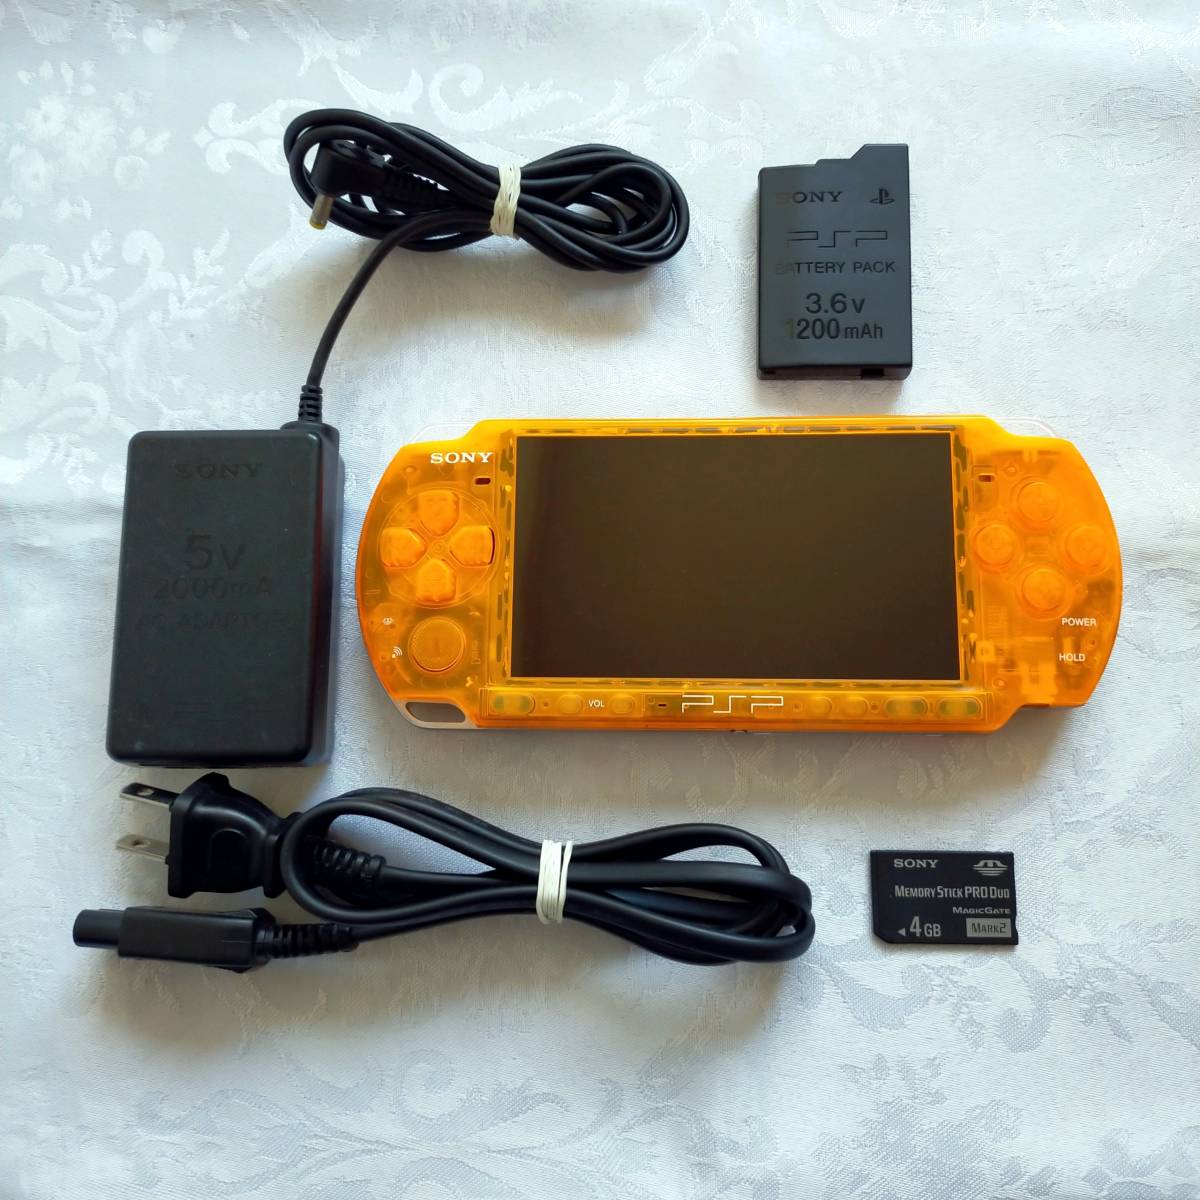 【おトク】 【美品】【カスタム】PSP 3000 すぐ遊べるセット(クリアオレンジ) PSP3000シリーズ